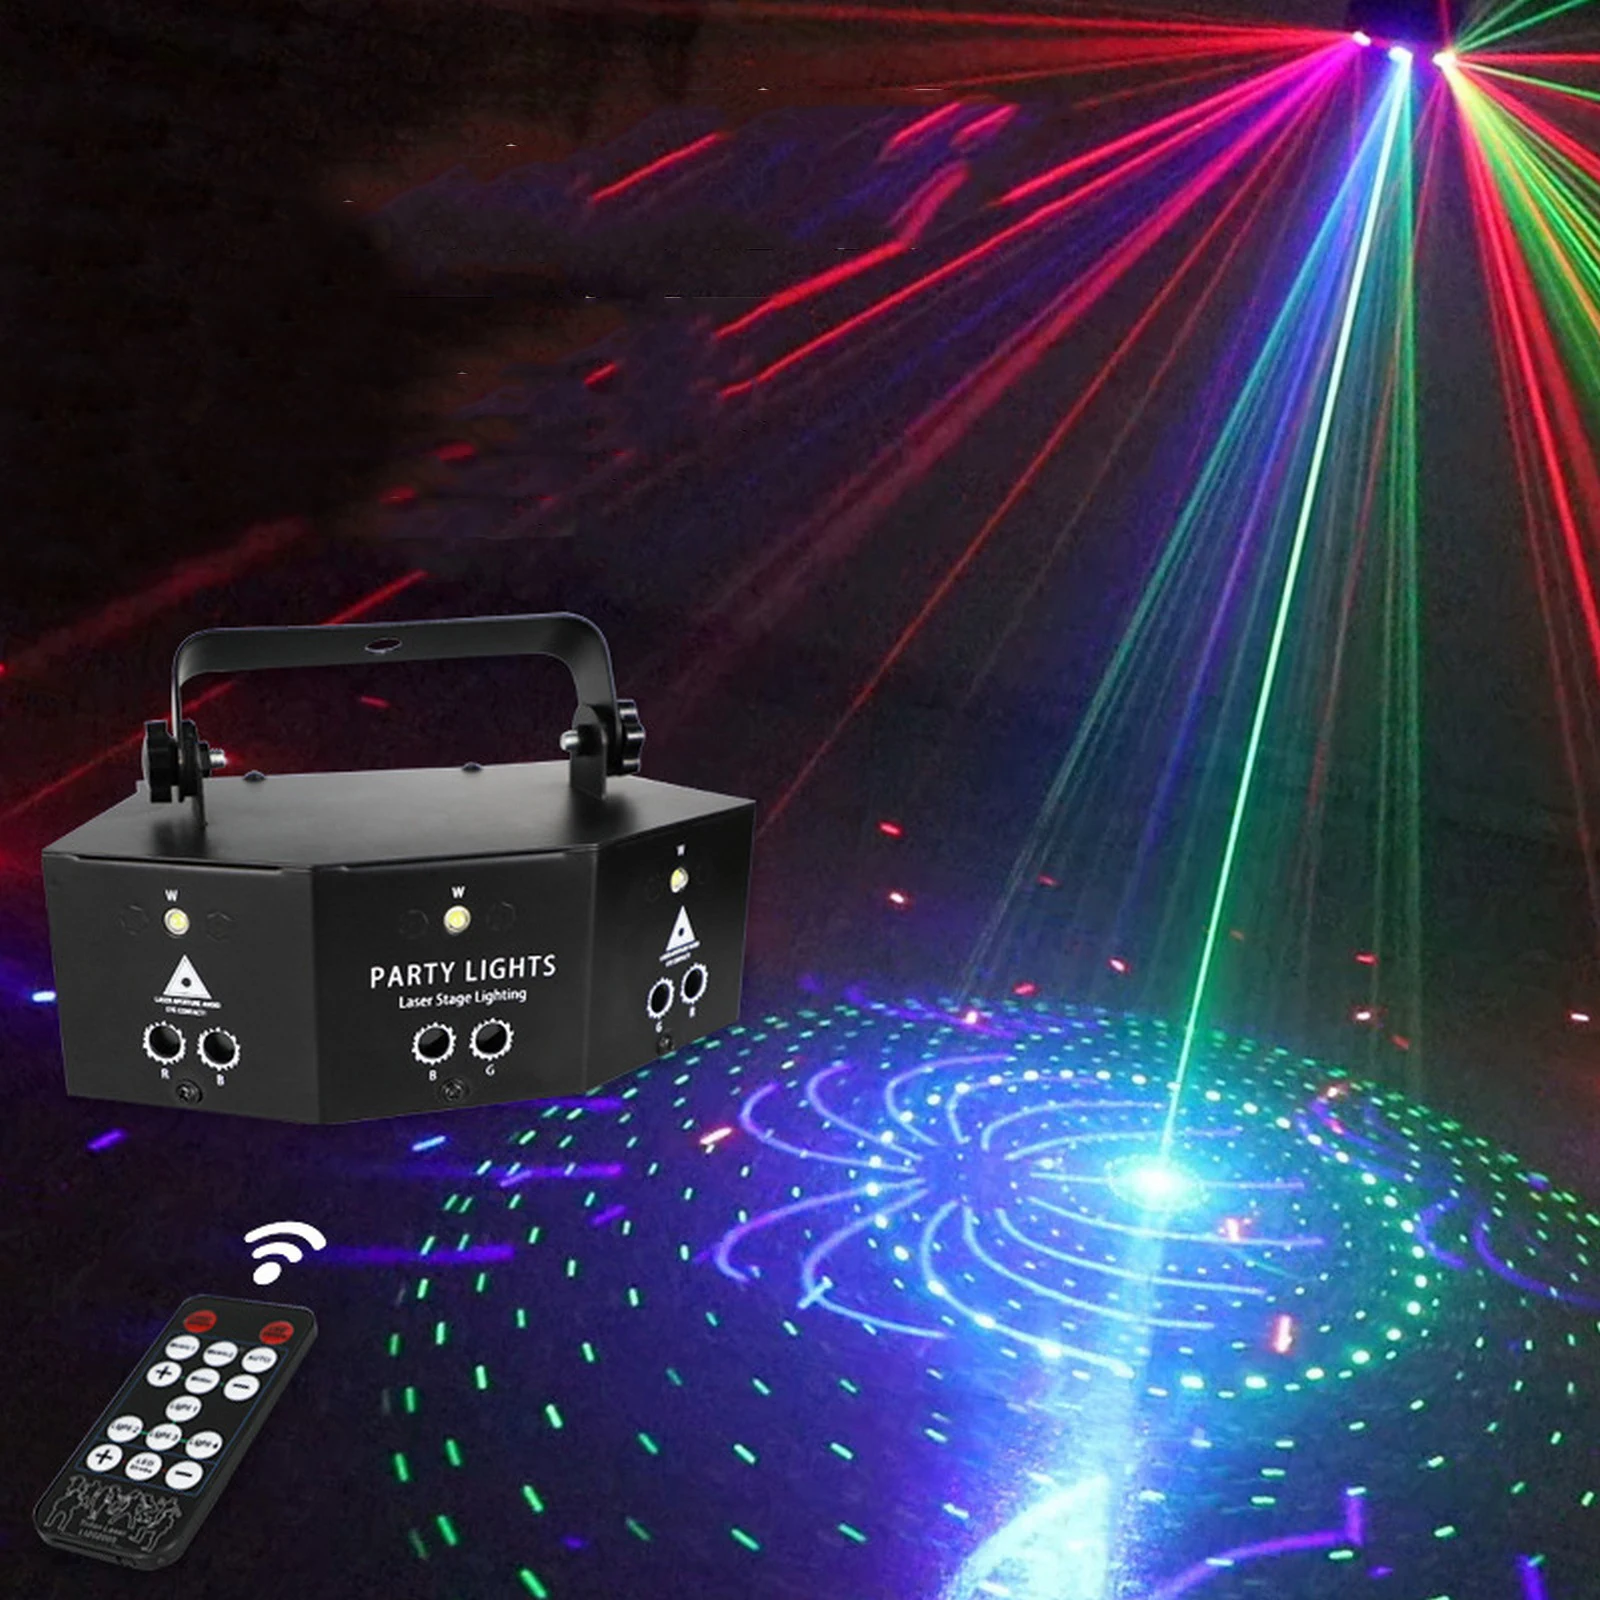 

Лазерная проекционная лампа мини-лампы для сцены 9 глаз, светодиодный дискотечный стробоскоп для дискотек, вечеринок, клубов, танцев, баров, ...